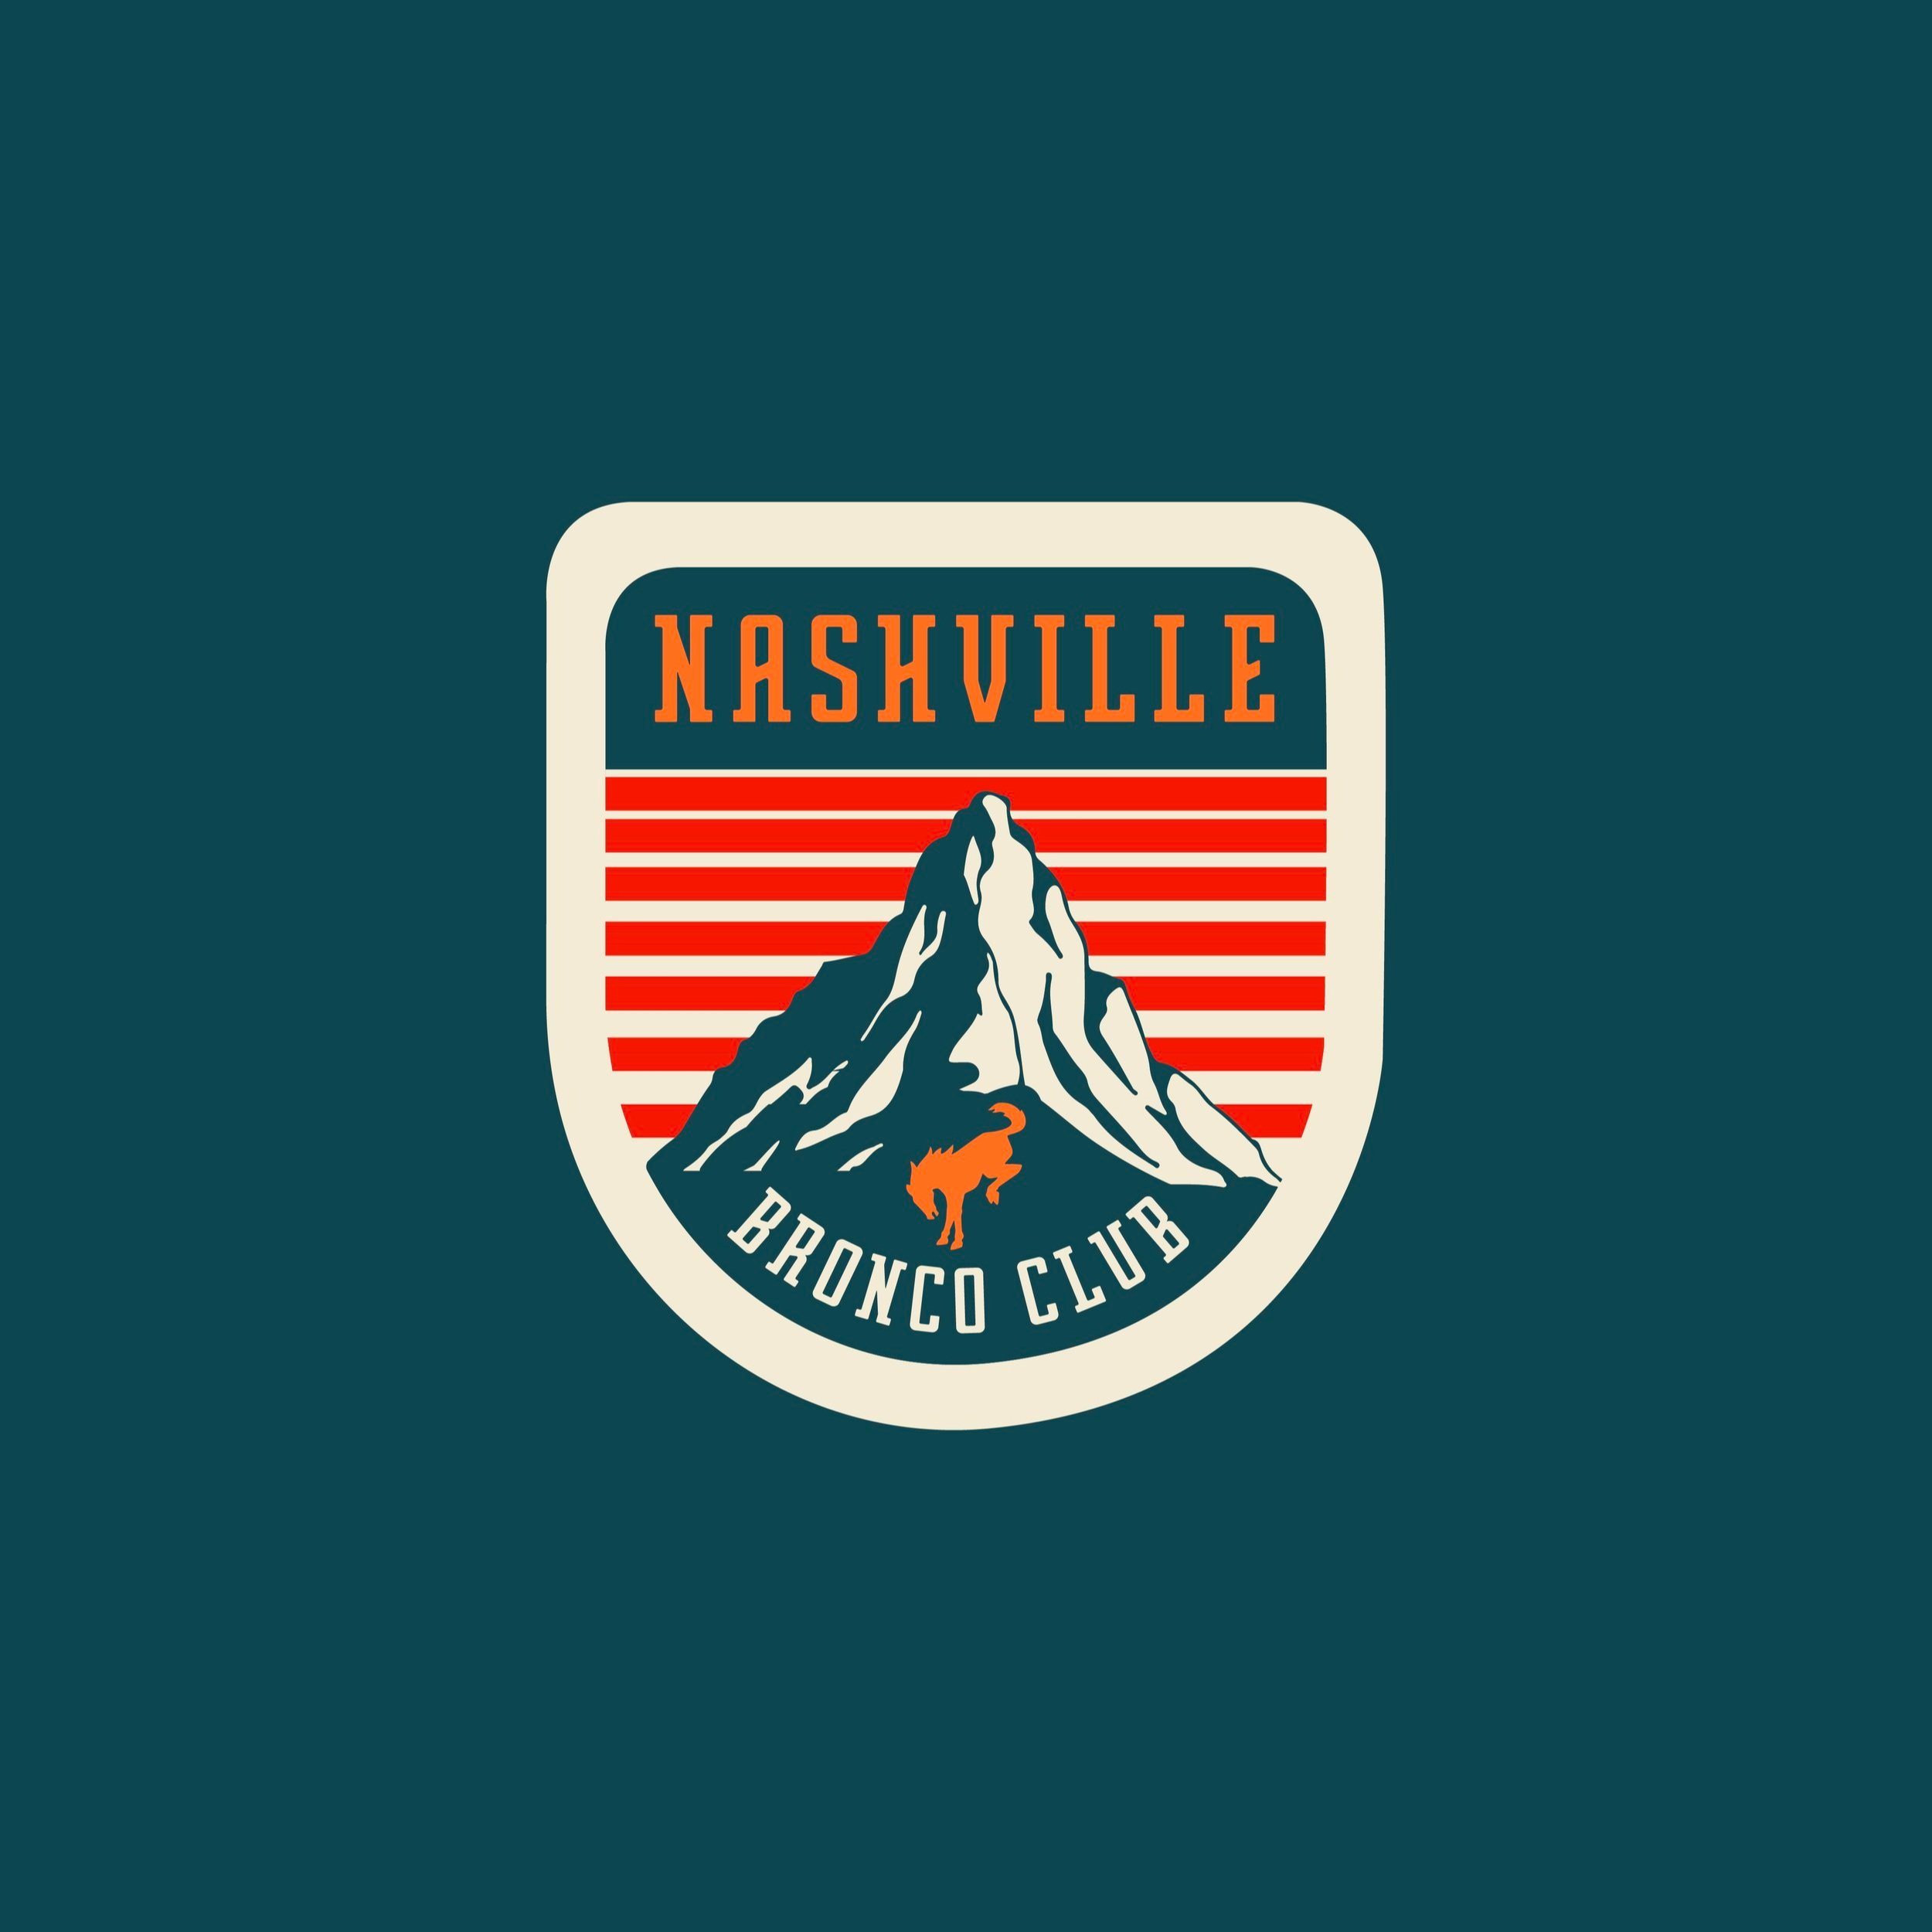 Nashville+Bronco+Club+Stickers+3-01.jpg